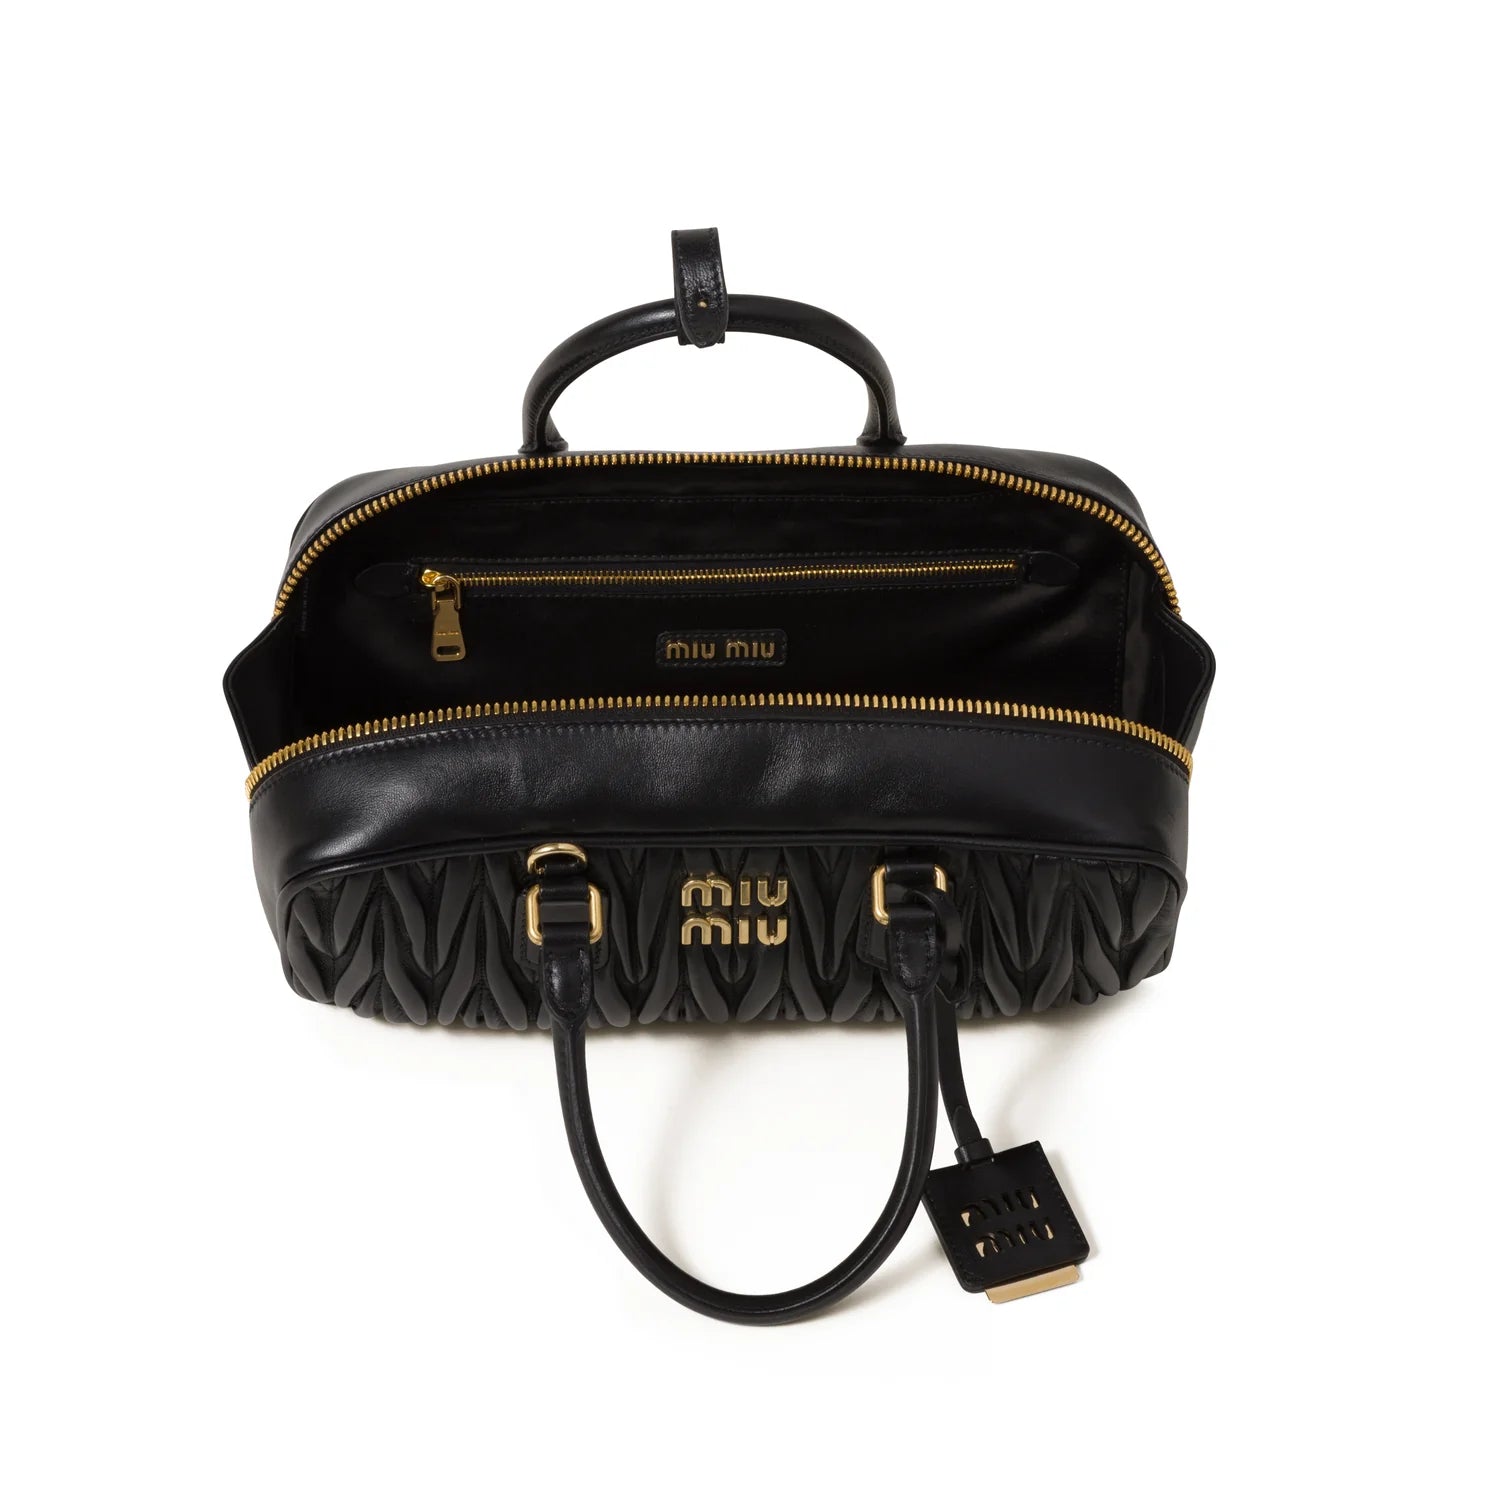 Miu Miu Matelassé Nappa Leather Top-handles Bag in Black